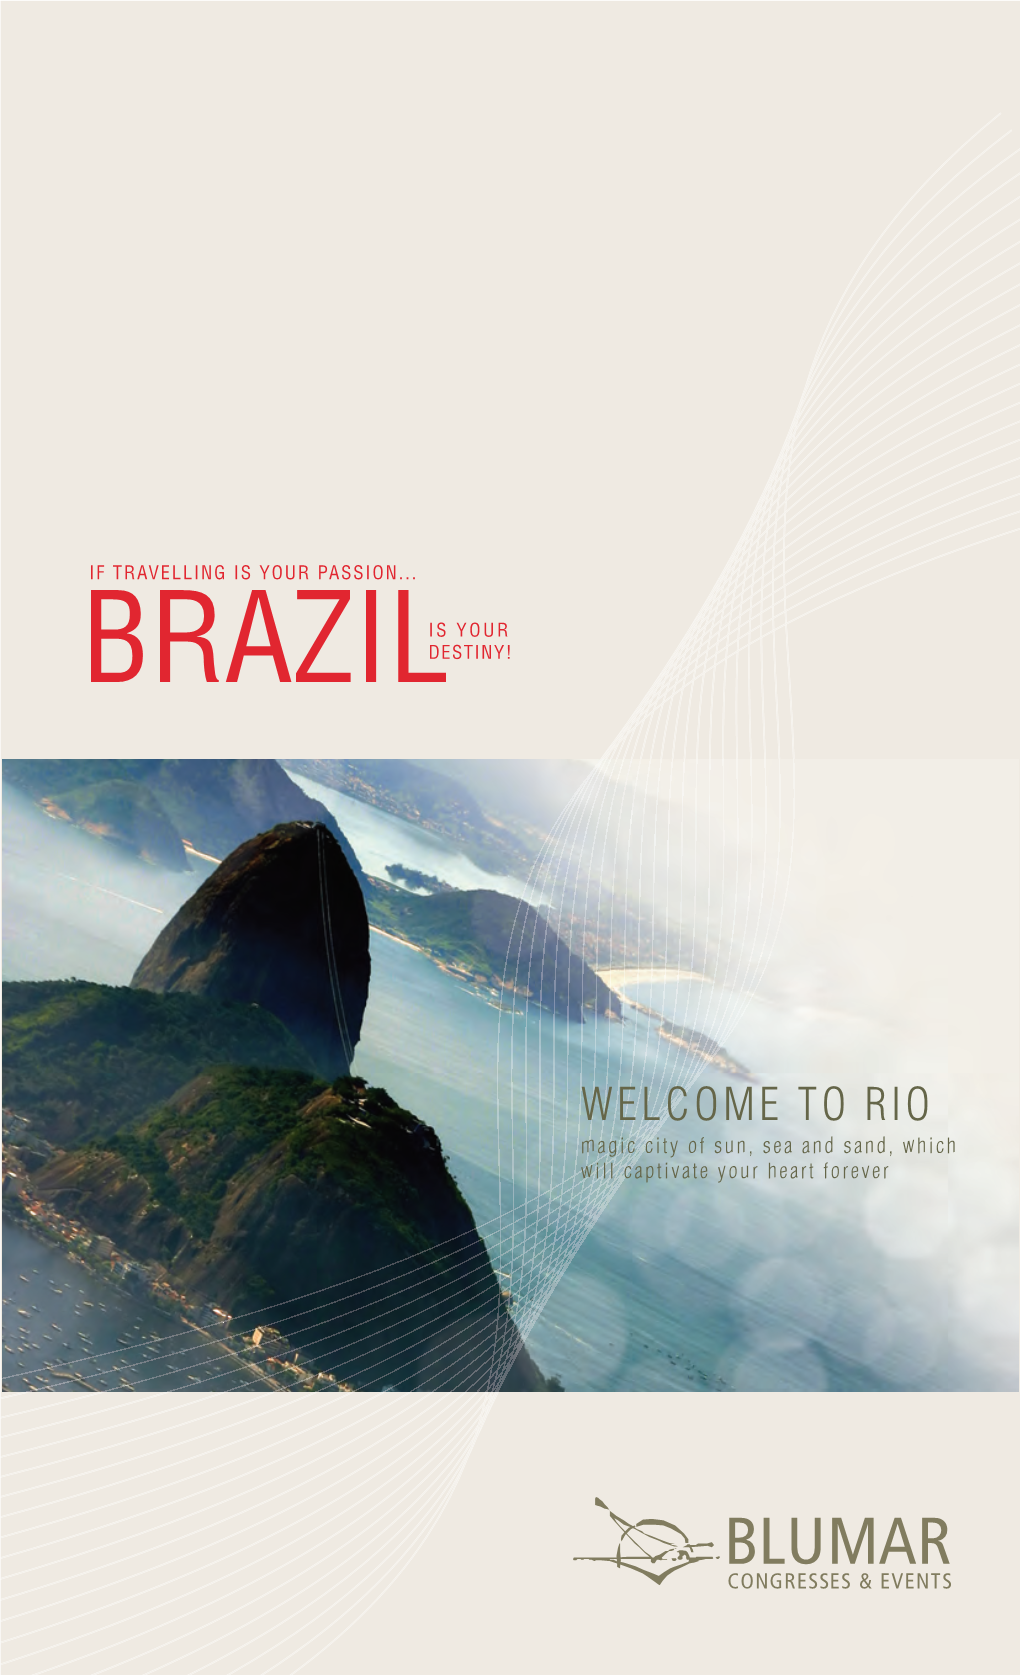 Rio De Janeiro | RJ | Brazil Phone: 55 21 2142 9300 | Fax: 55 21 2511 3739 BRAZIL 24H Emergency Phone: 55 21 78455940